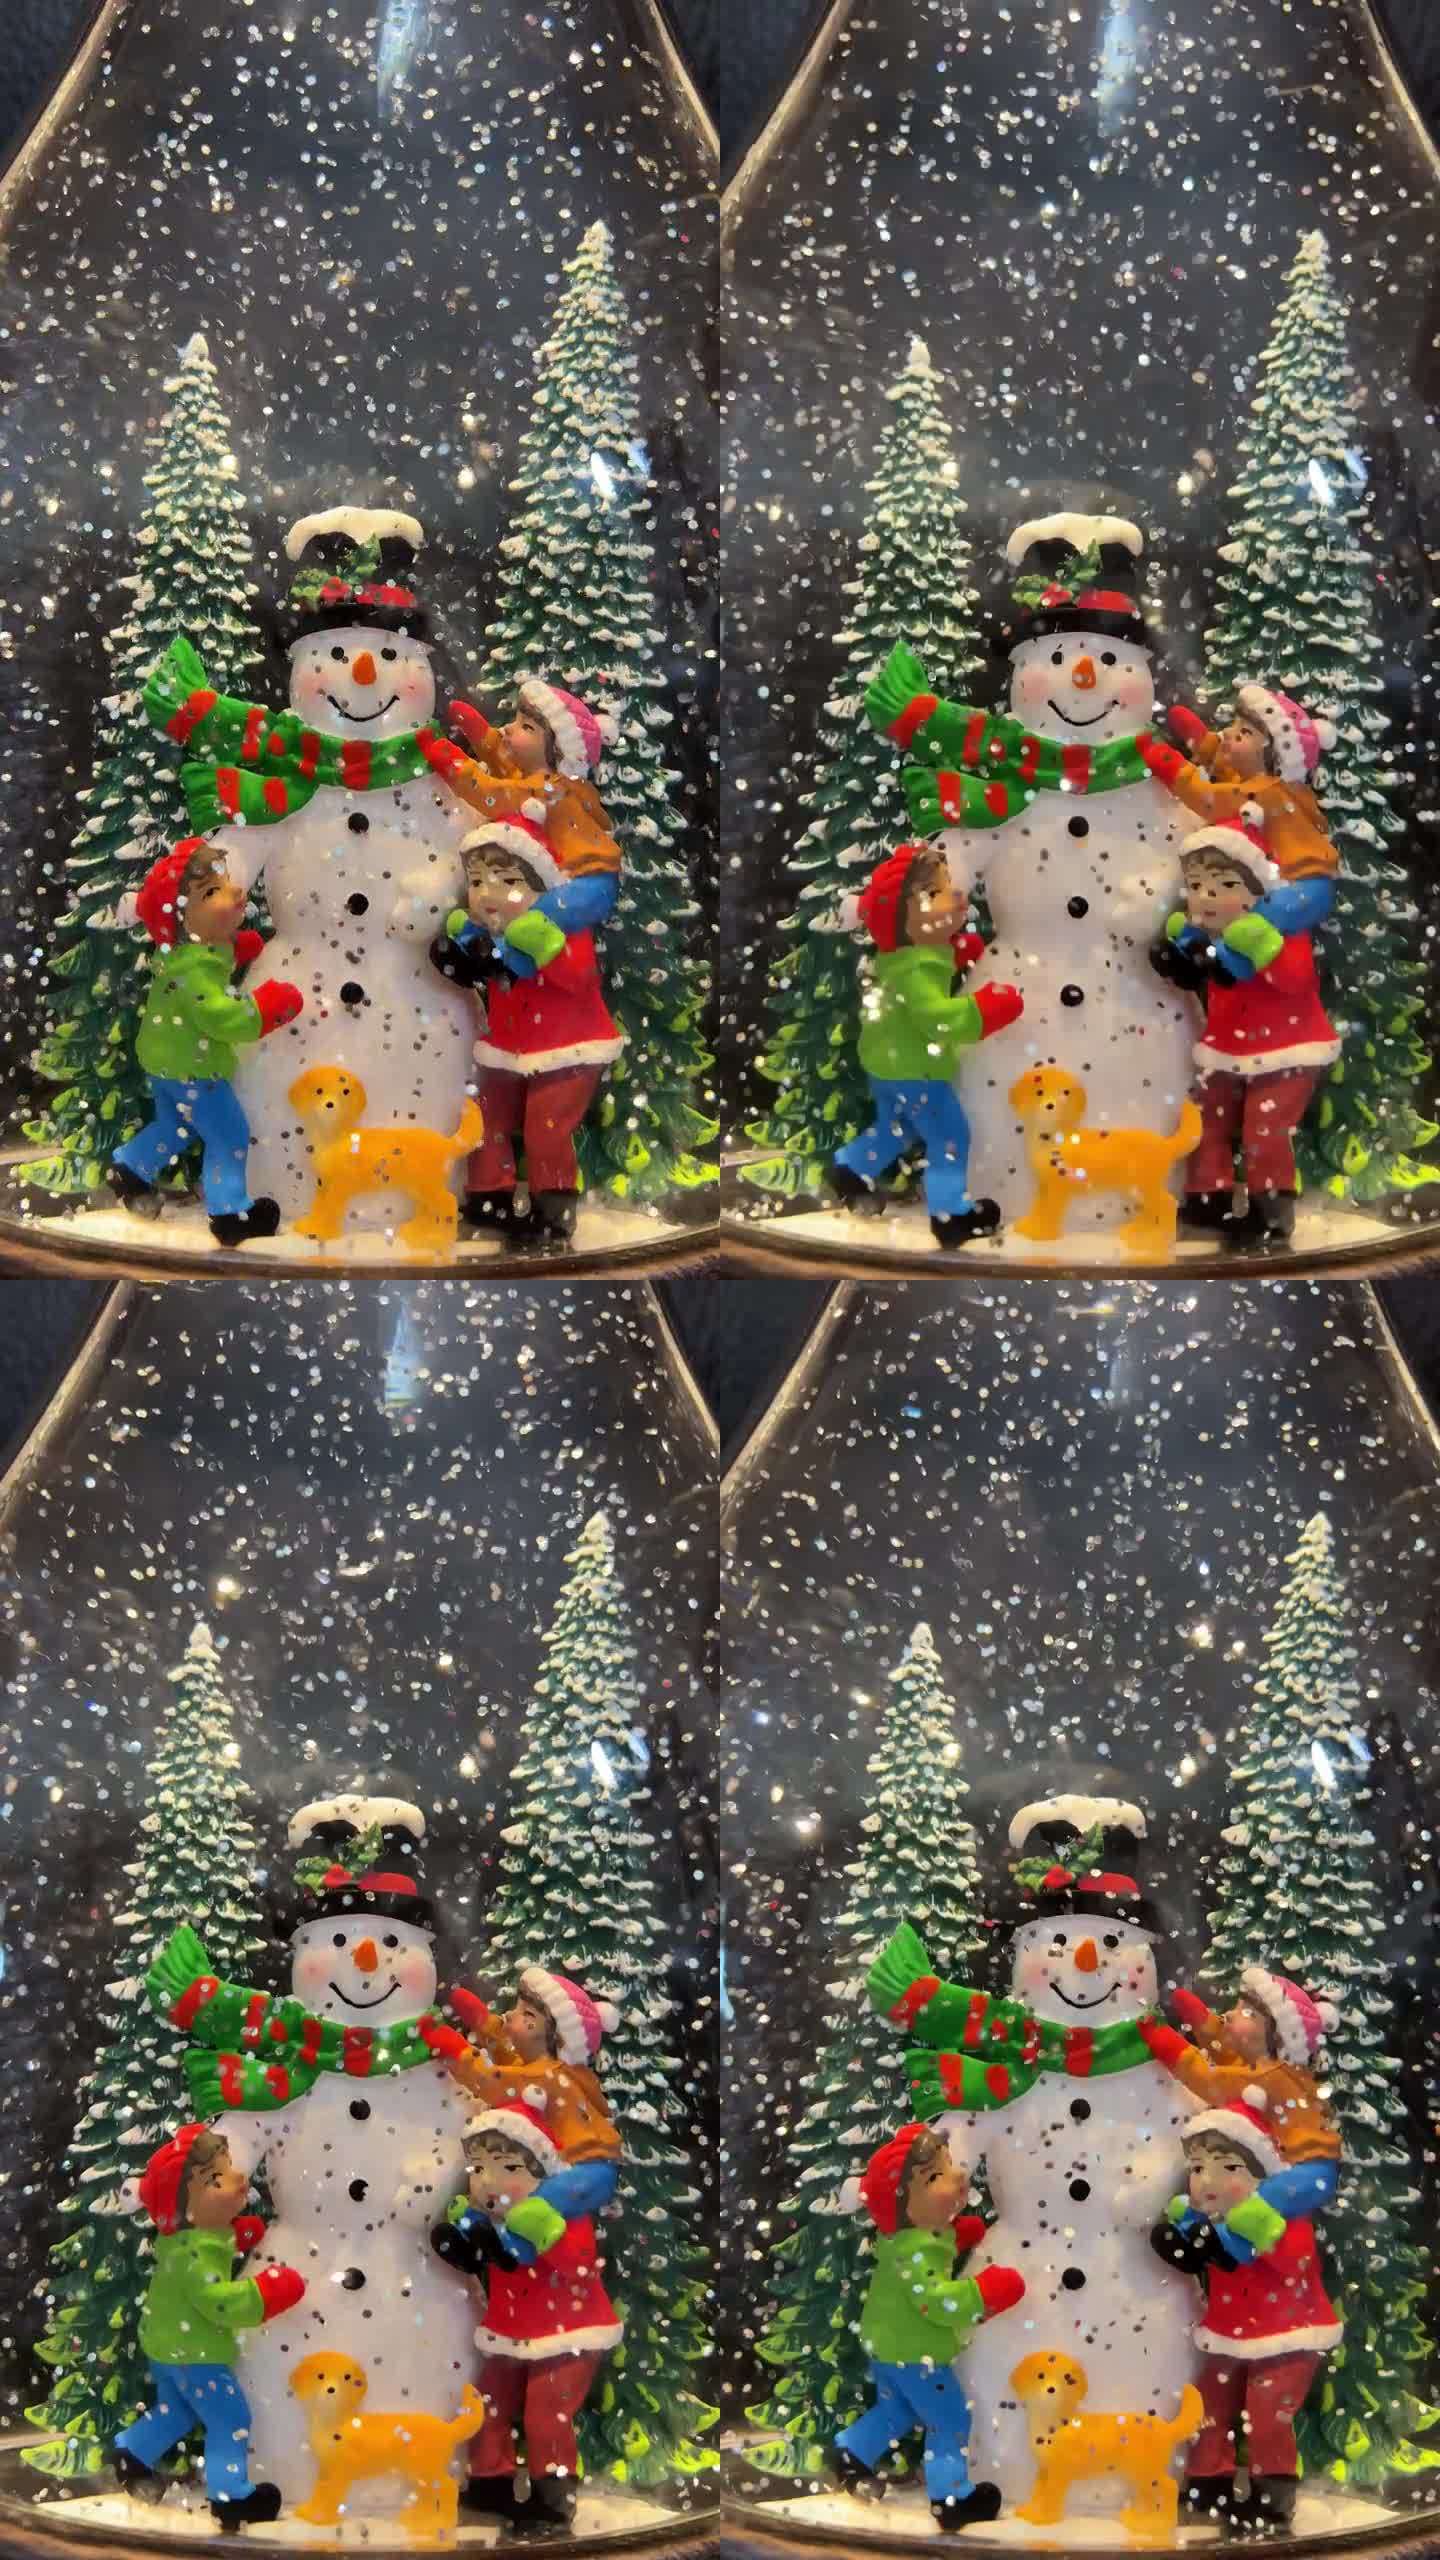 一个雪人站在上面微笑的雪花玻璃球，一条红条纹的绿围巾，一顶黑帽子，孩子们在他旁边和他一起玩，灿烂的雪